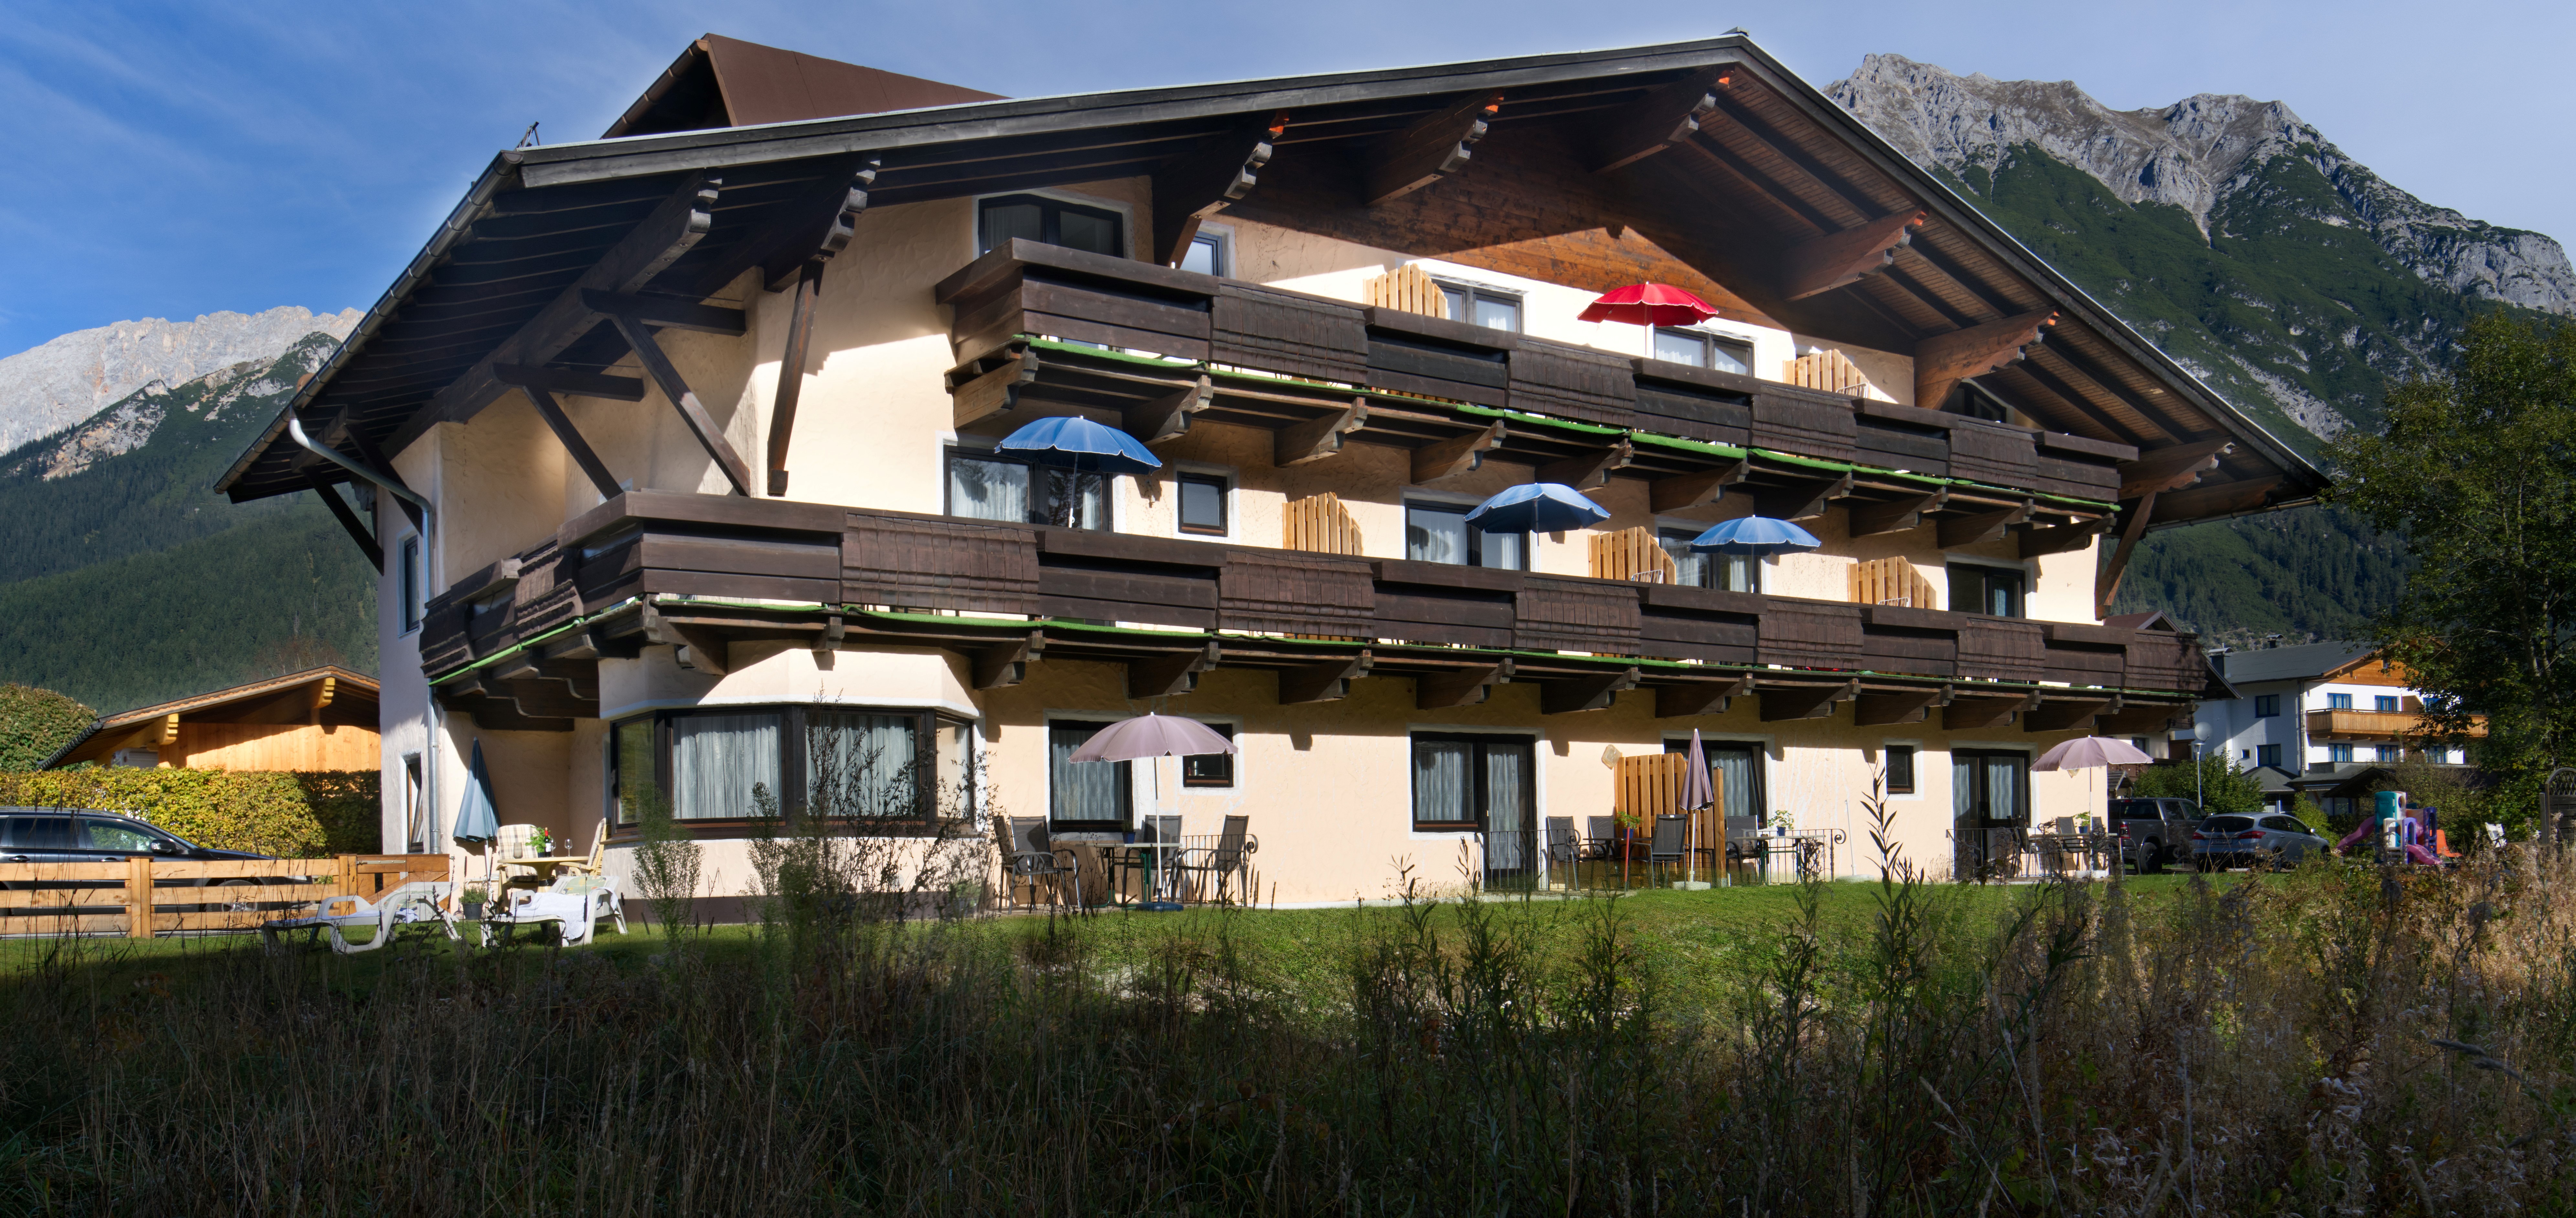 Appartementenhuis Ostbacher Stern in Tirol Oostenrijk (Woning type D)  met 2 slaapkamers douche/bad